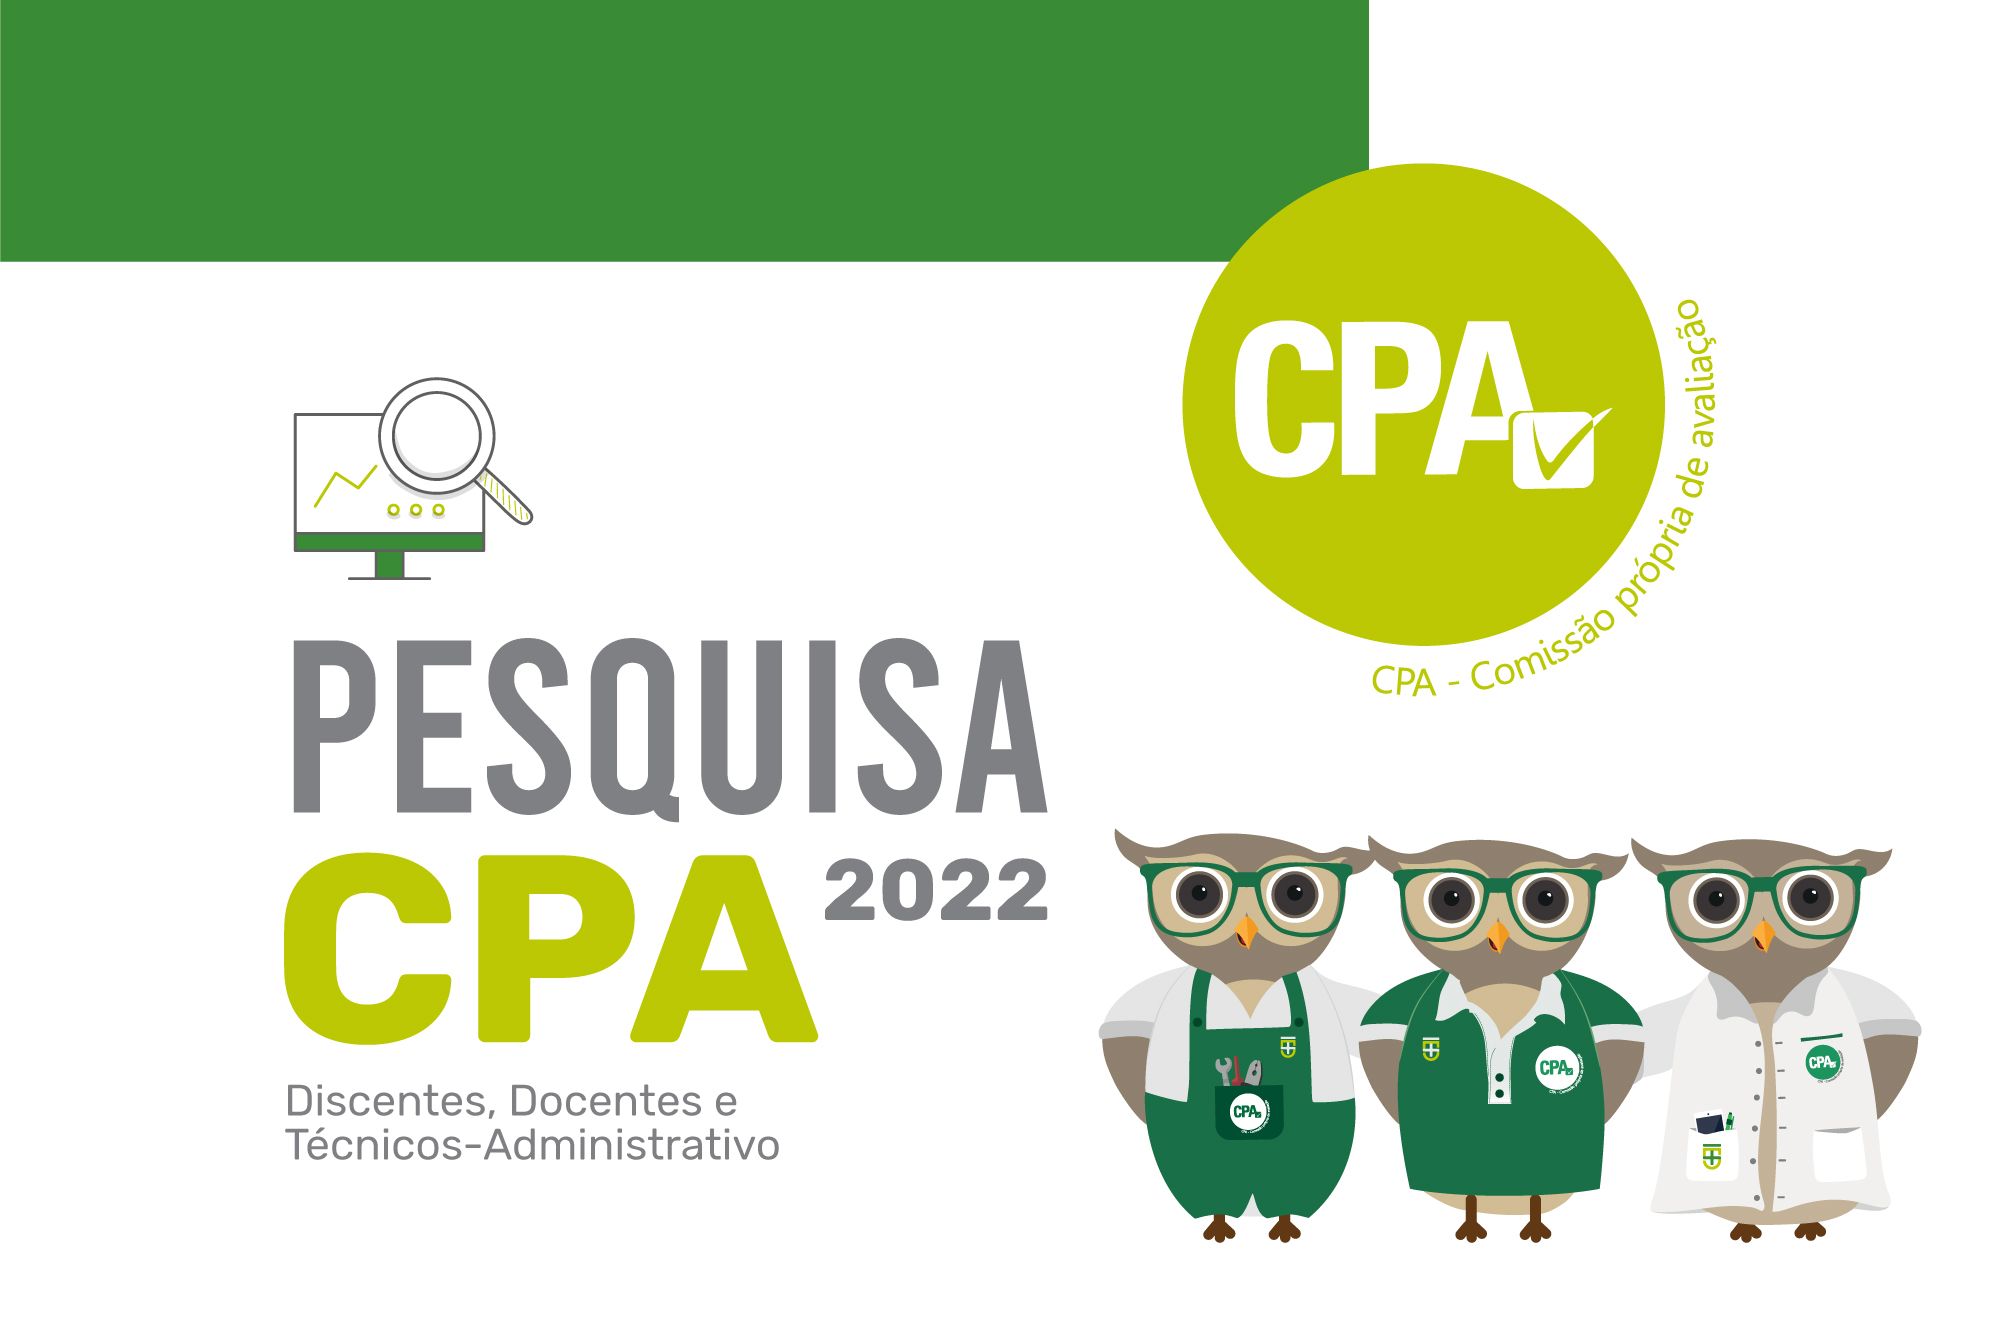 Pesquisa CPA - 2022 (Discentes, Docentes e Técnico-administrativo)